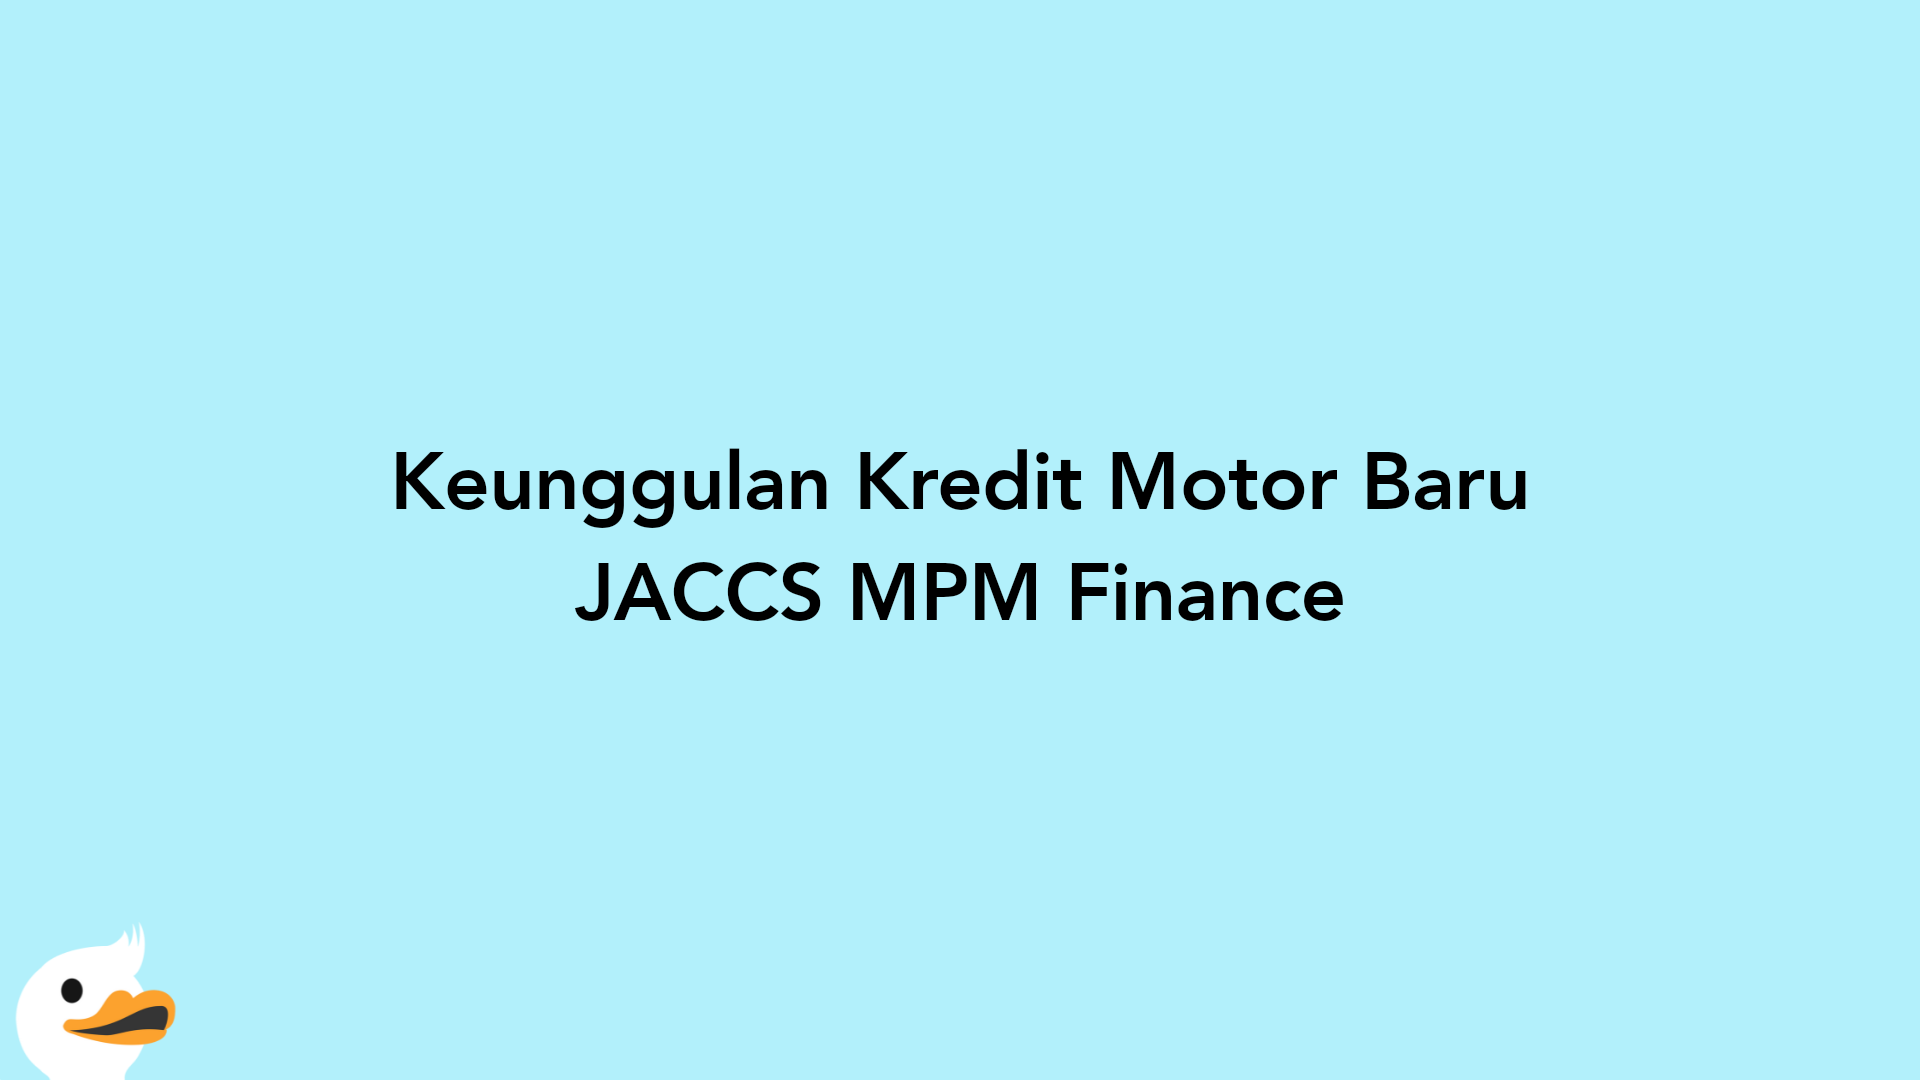 Keunggulan Kredit Motor Baru JACCS MPM Finance